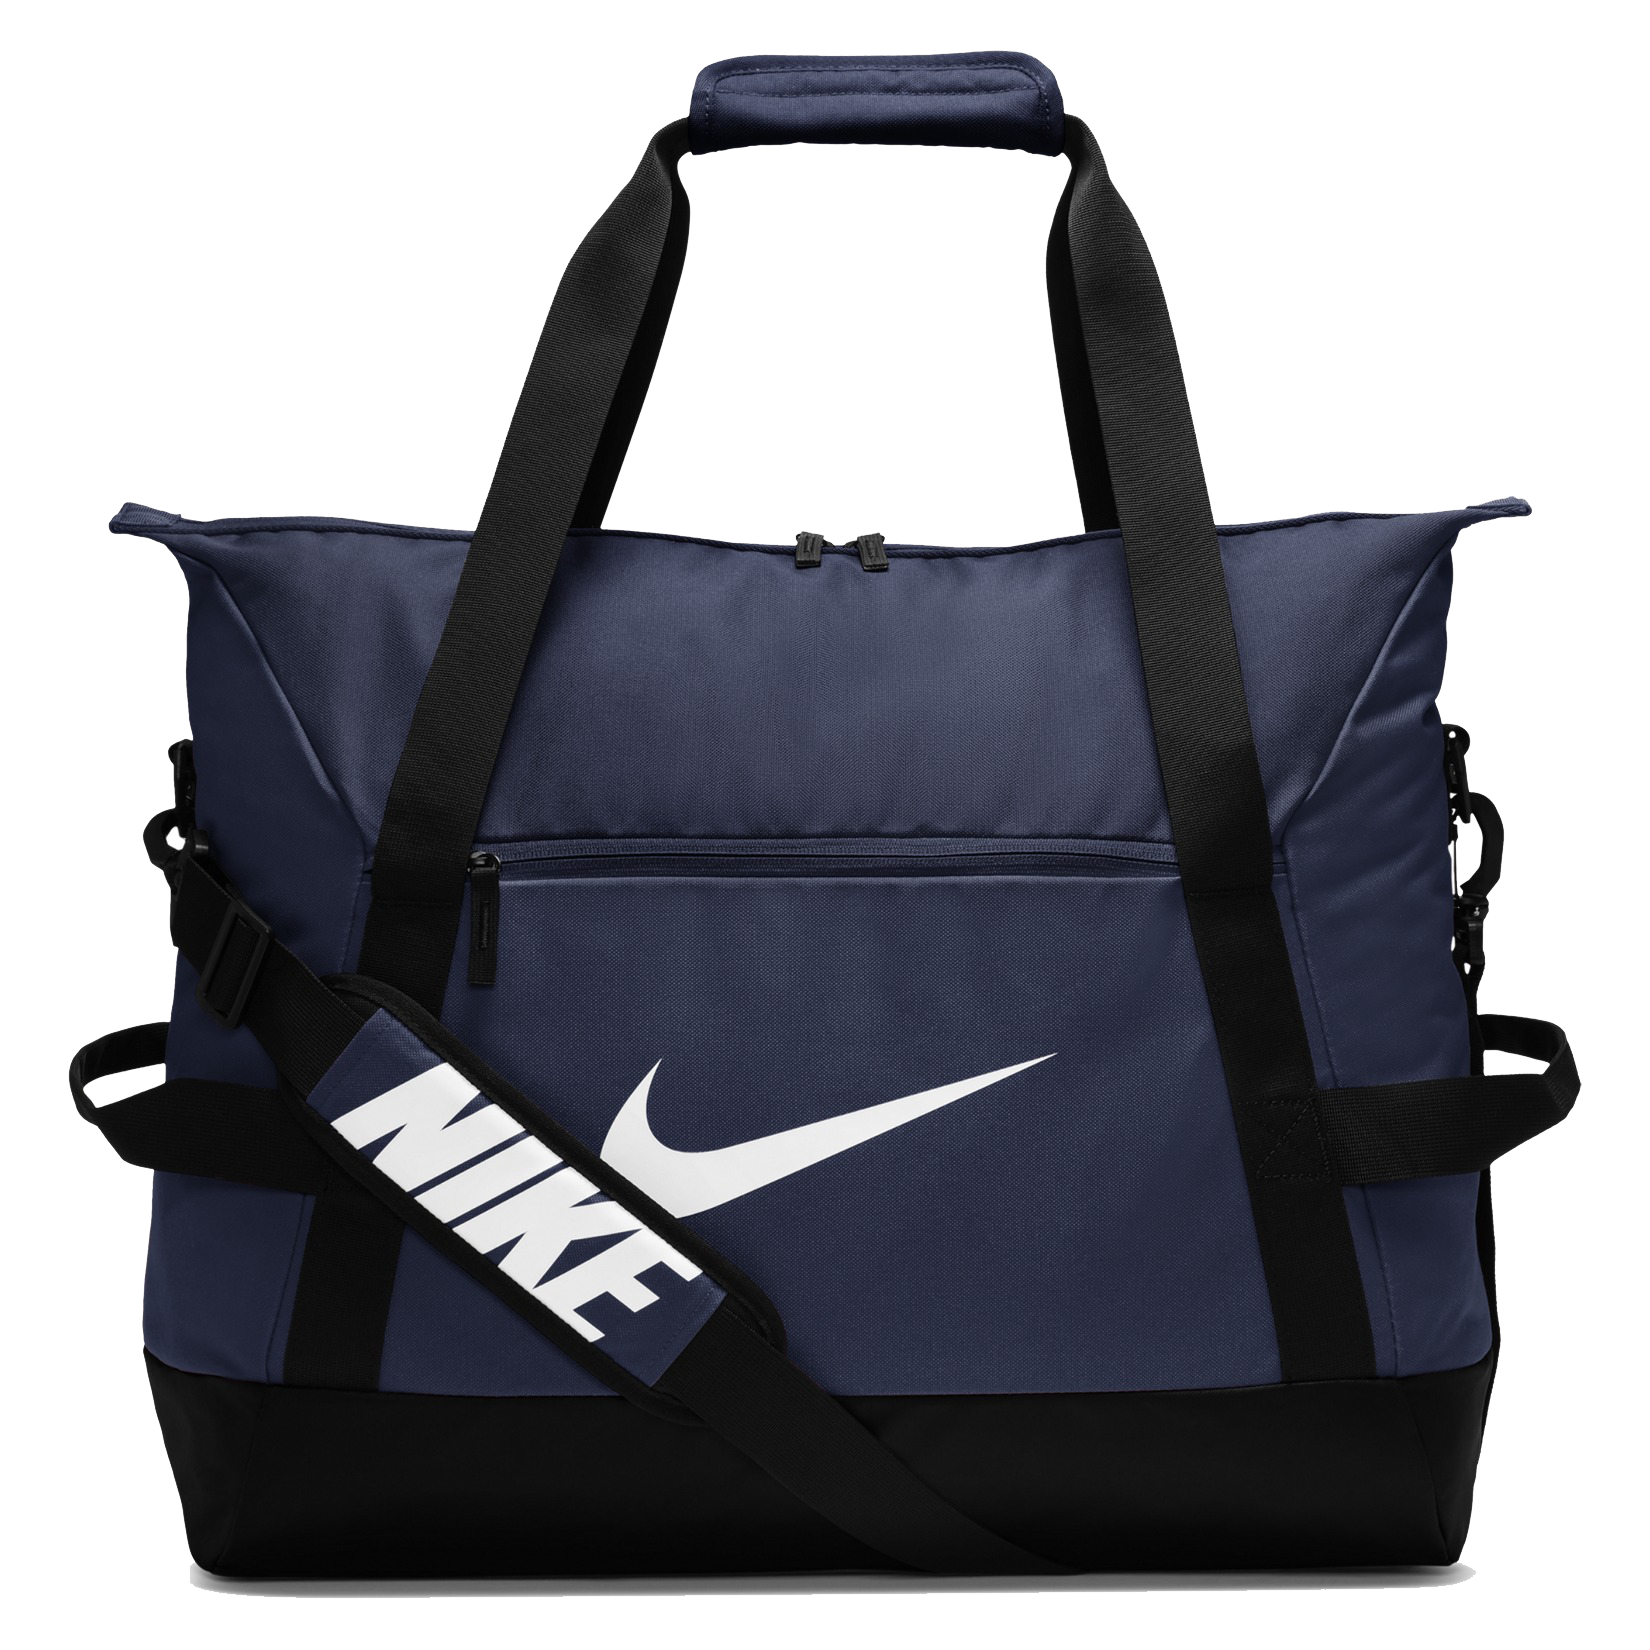 Nike Academy Team Duffel L tmavě modrá/černá/bílá Uk MISC